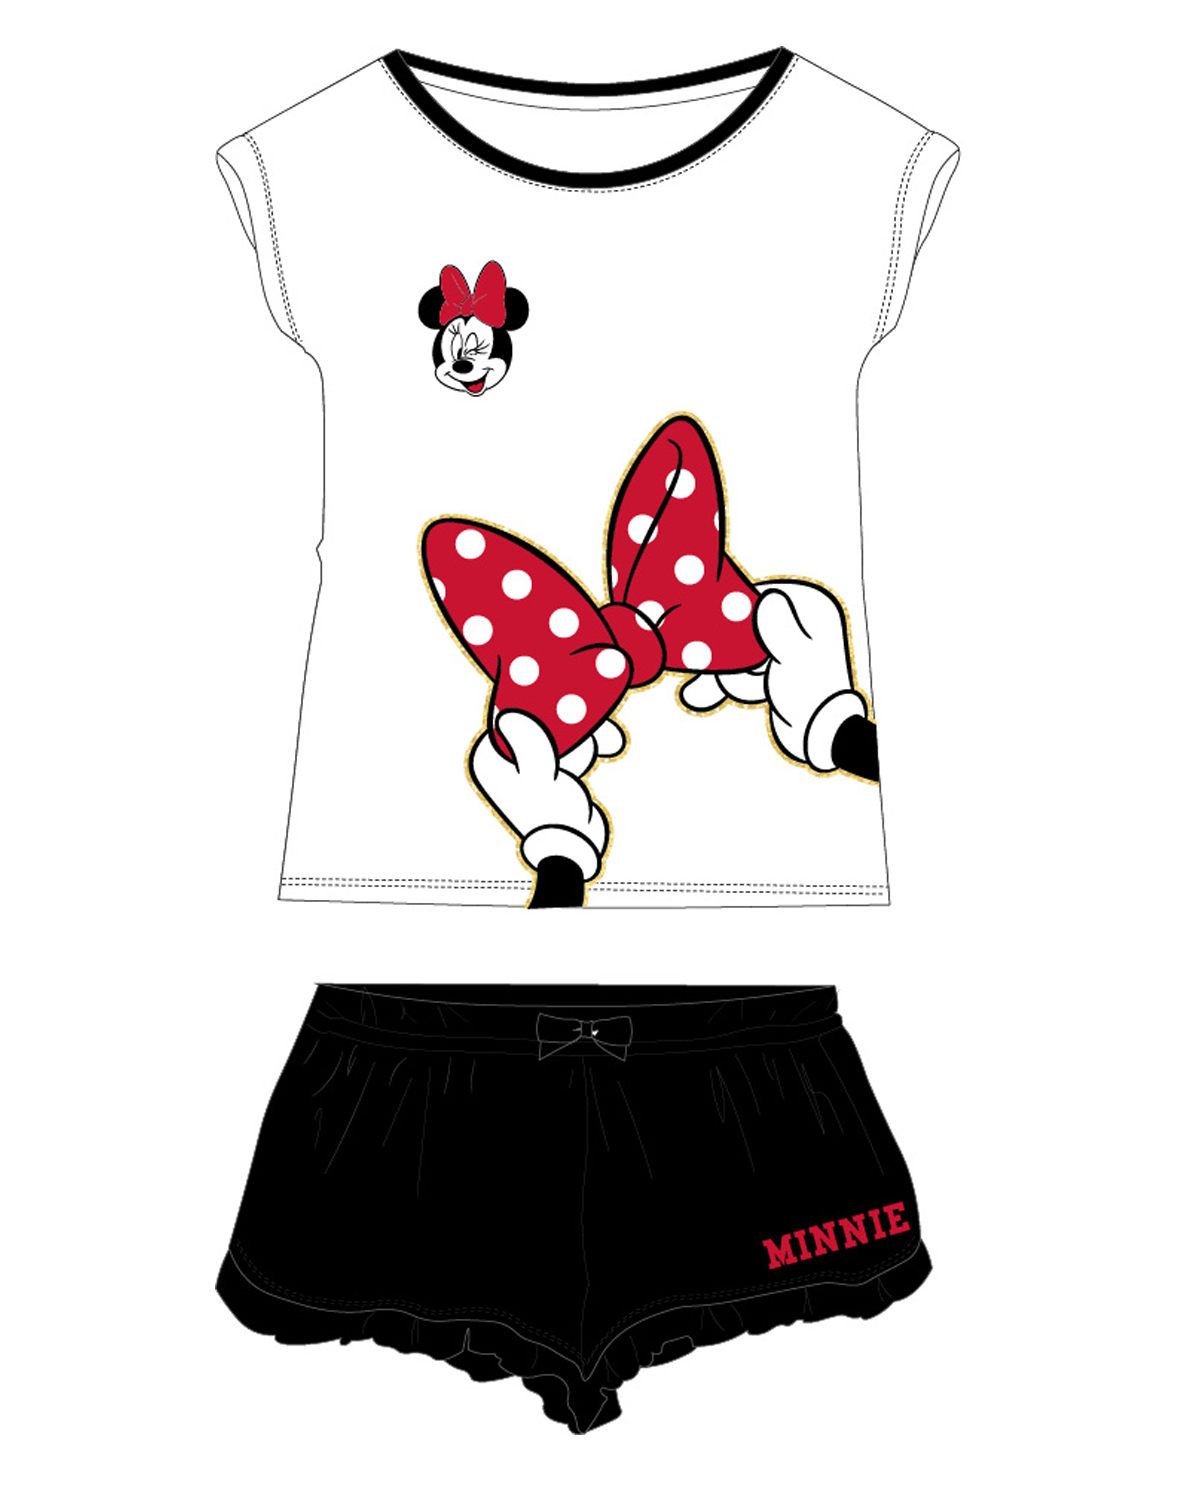 Minnie Mouse - licence Dívčí pyžamo - Minnie Mouse 5204A091, bílá / černá Barva: Bílá, Velikost: 164